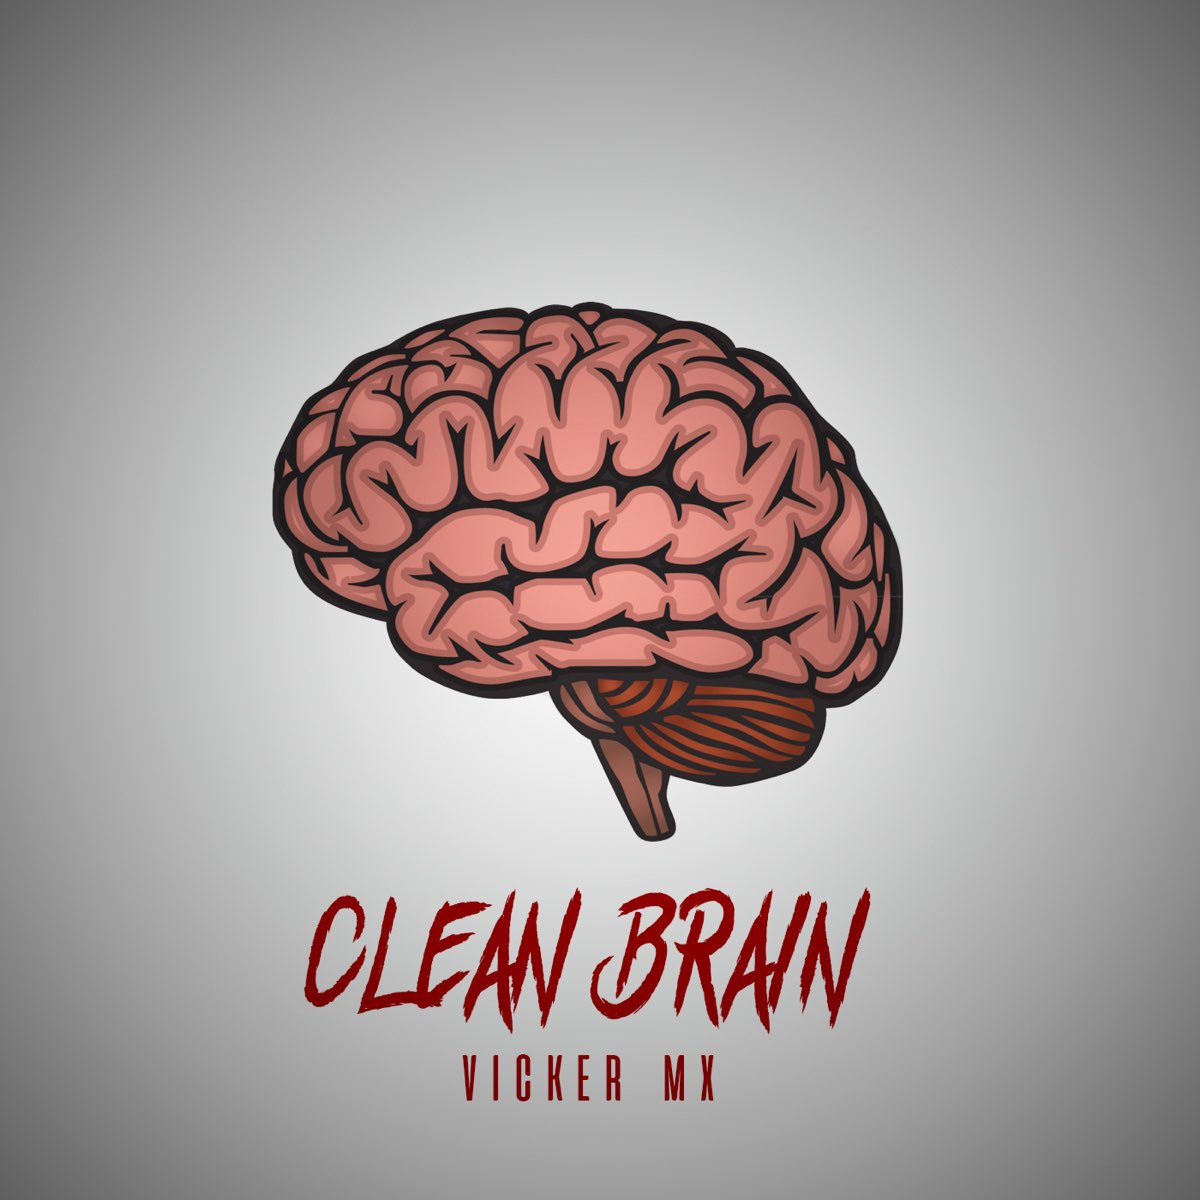 Clean brain